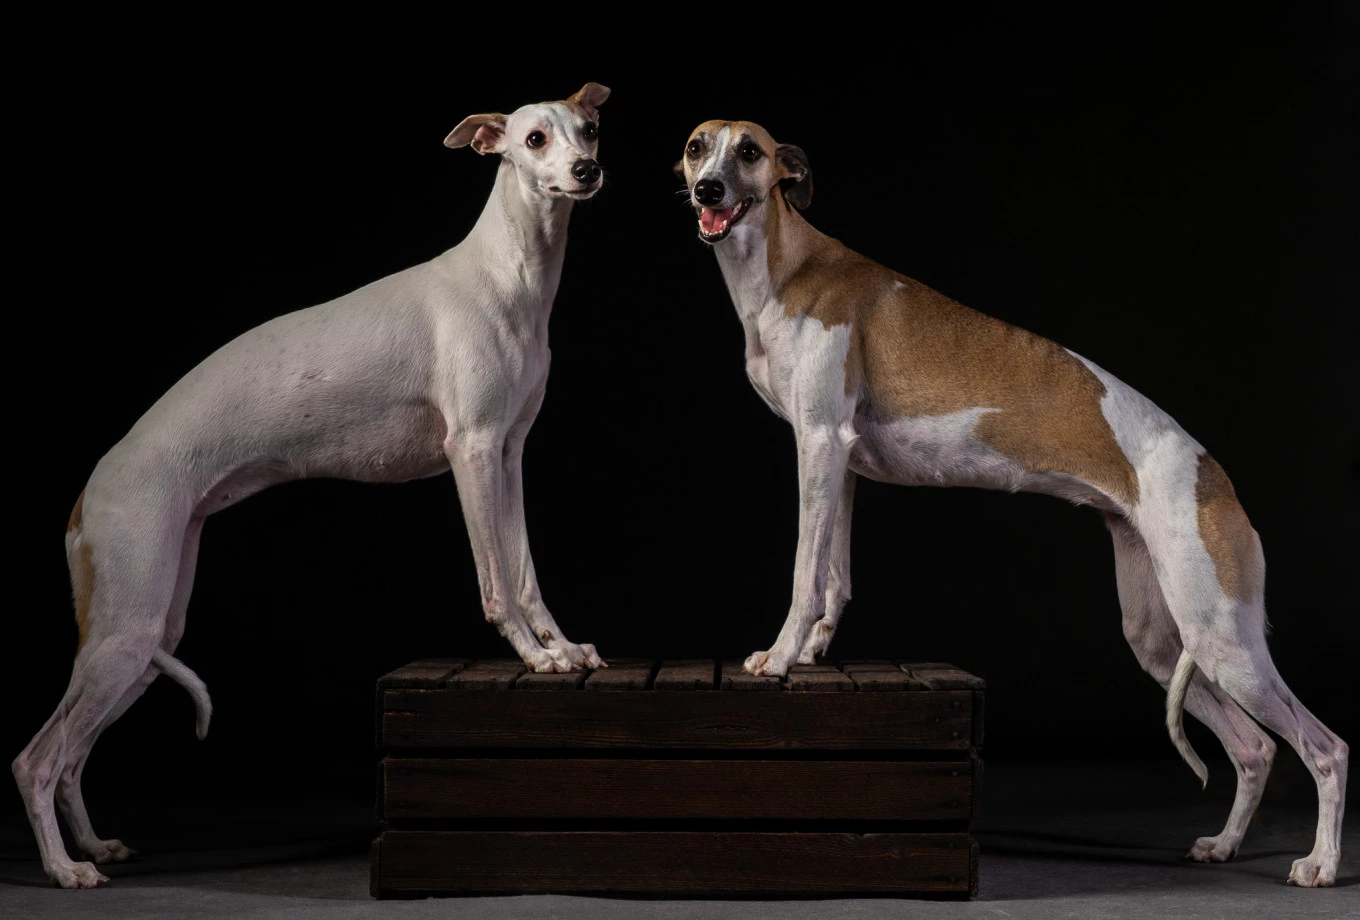 fotograf warszawa inoinu portfolio zdjecia zdjecia zwierzat sesja zdjeciowa konie psy koty